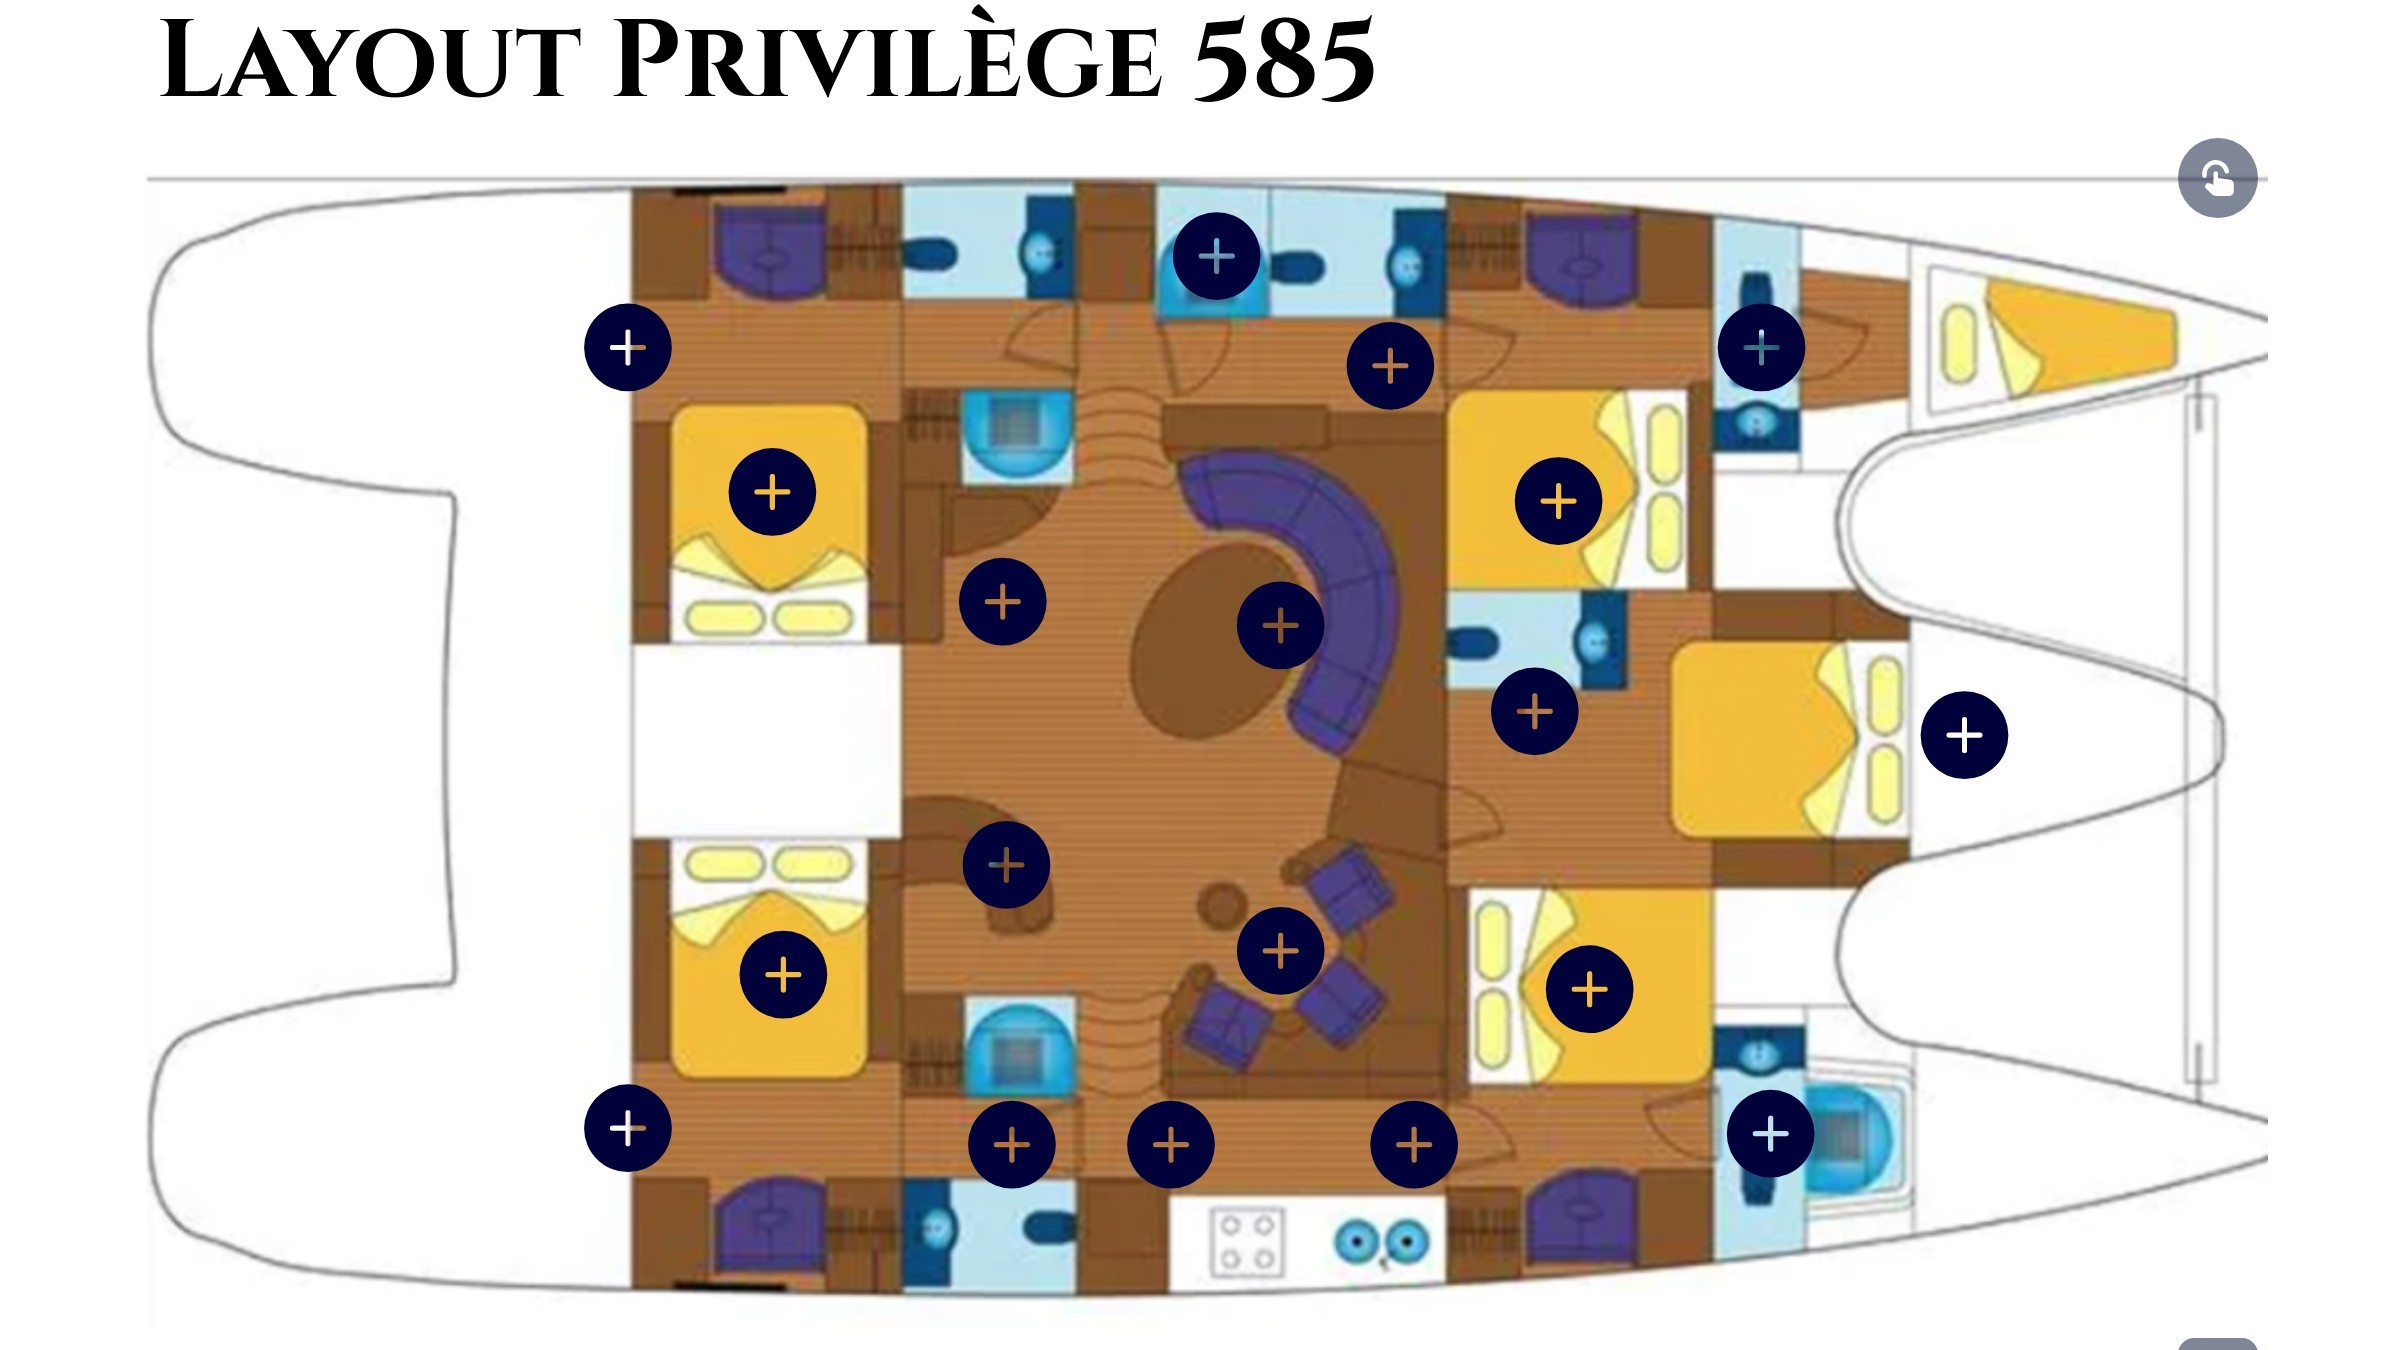 Privilege 585